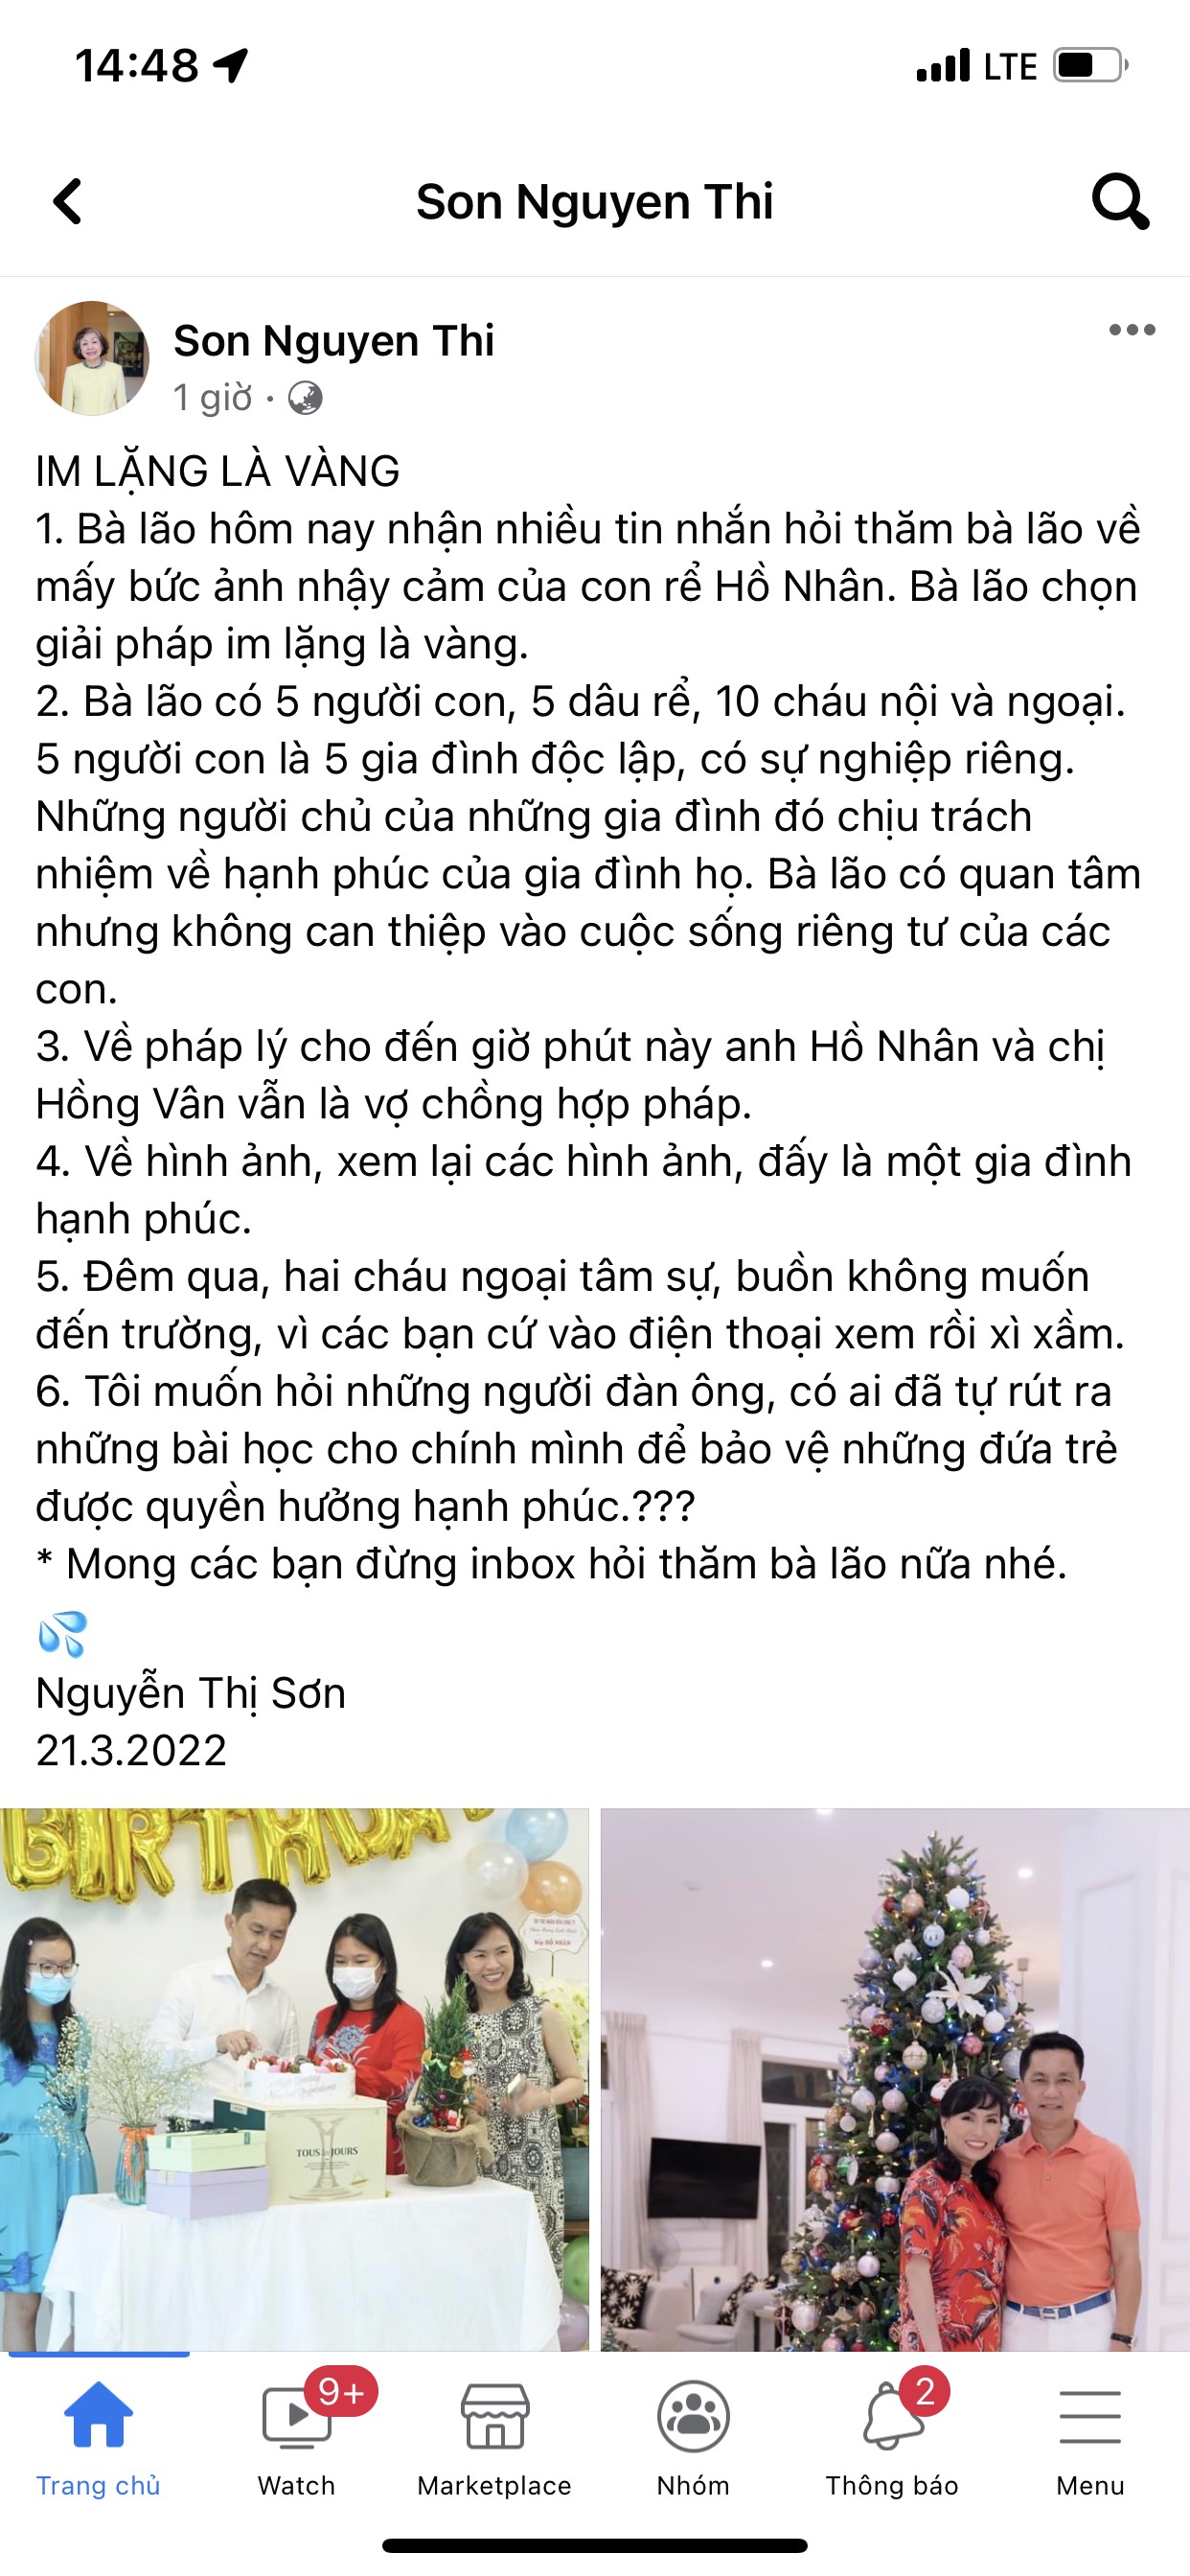 Bài viết được bà Nguyễn Thị Sơn đăng tải trên trang cá nhân cách đây ít giờ.